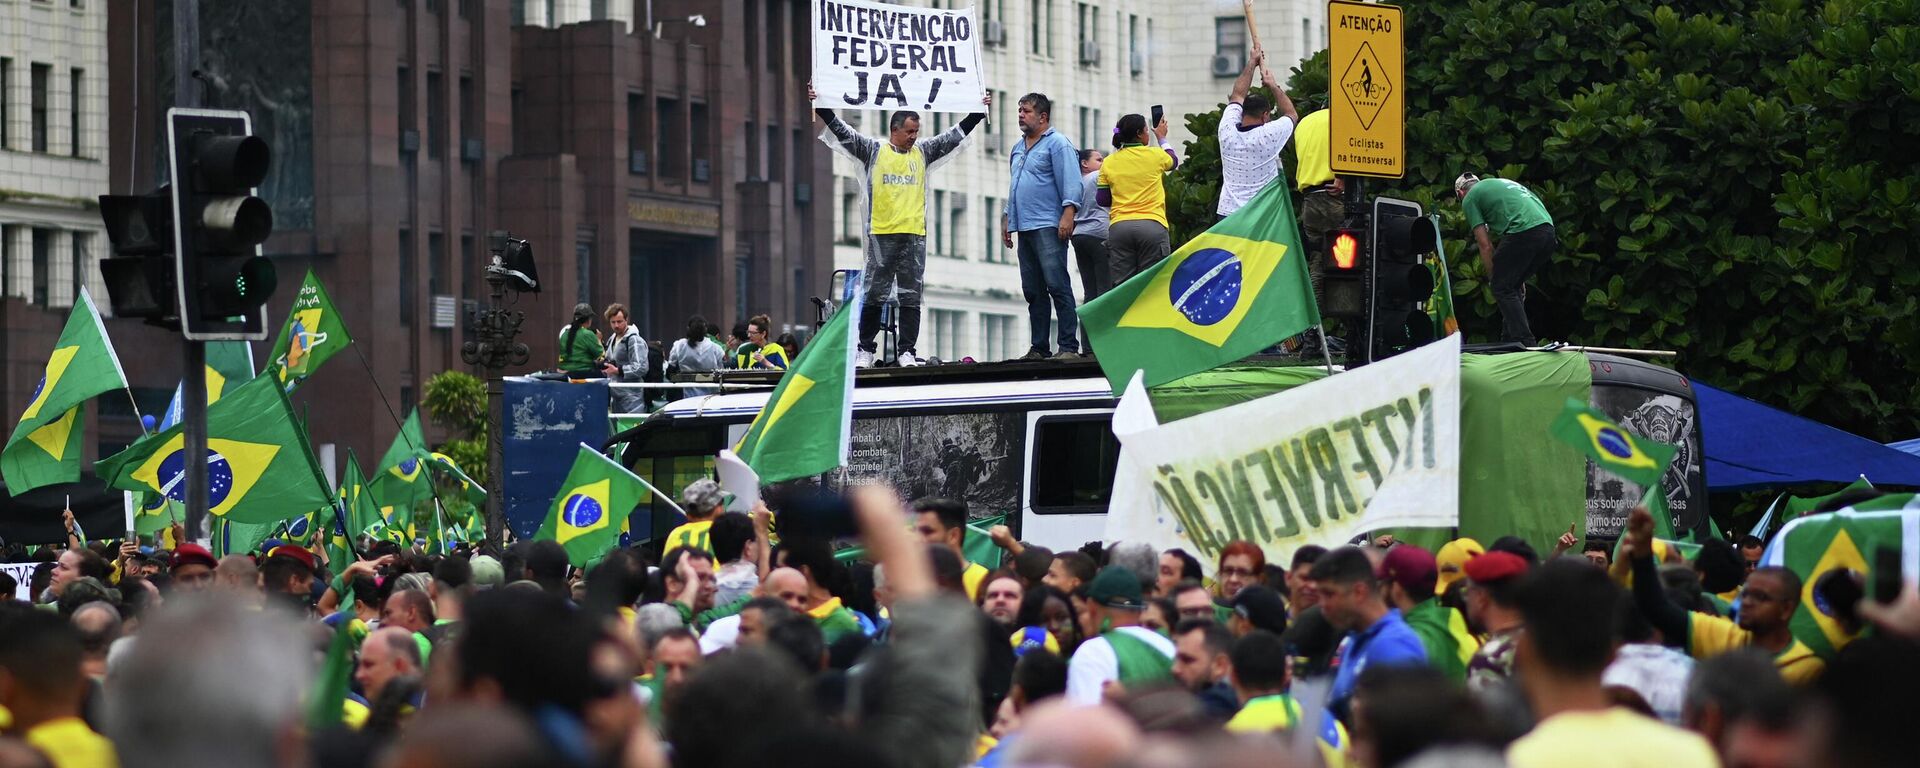 Protestas en Brasil tras los resultados de las elecciones presidenciales del 30 de octubre de 2022 - Sputnik Mundo, 1920, 02.11.2022